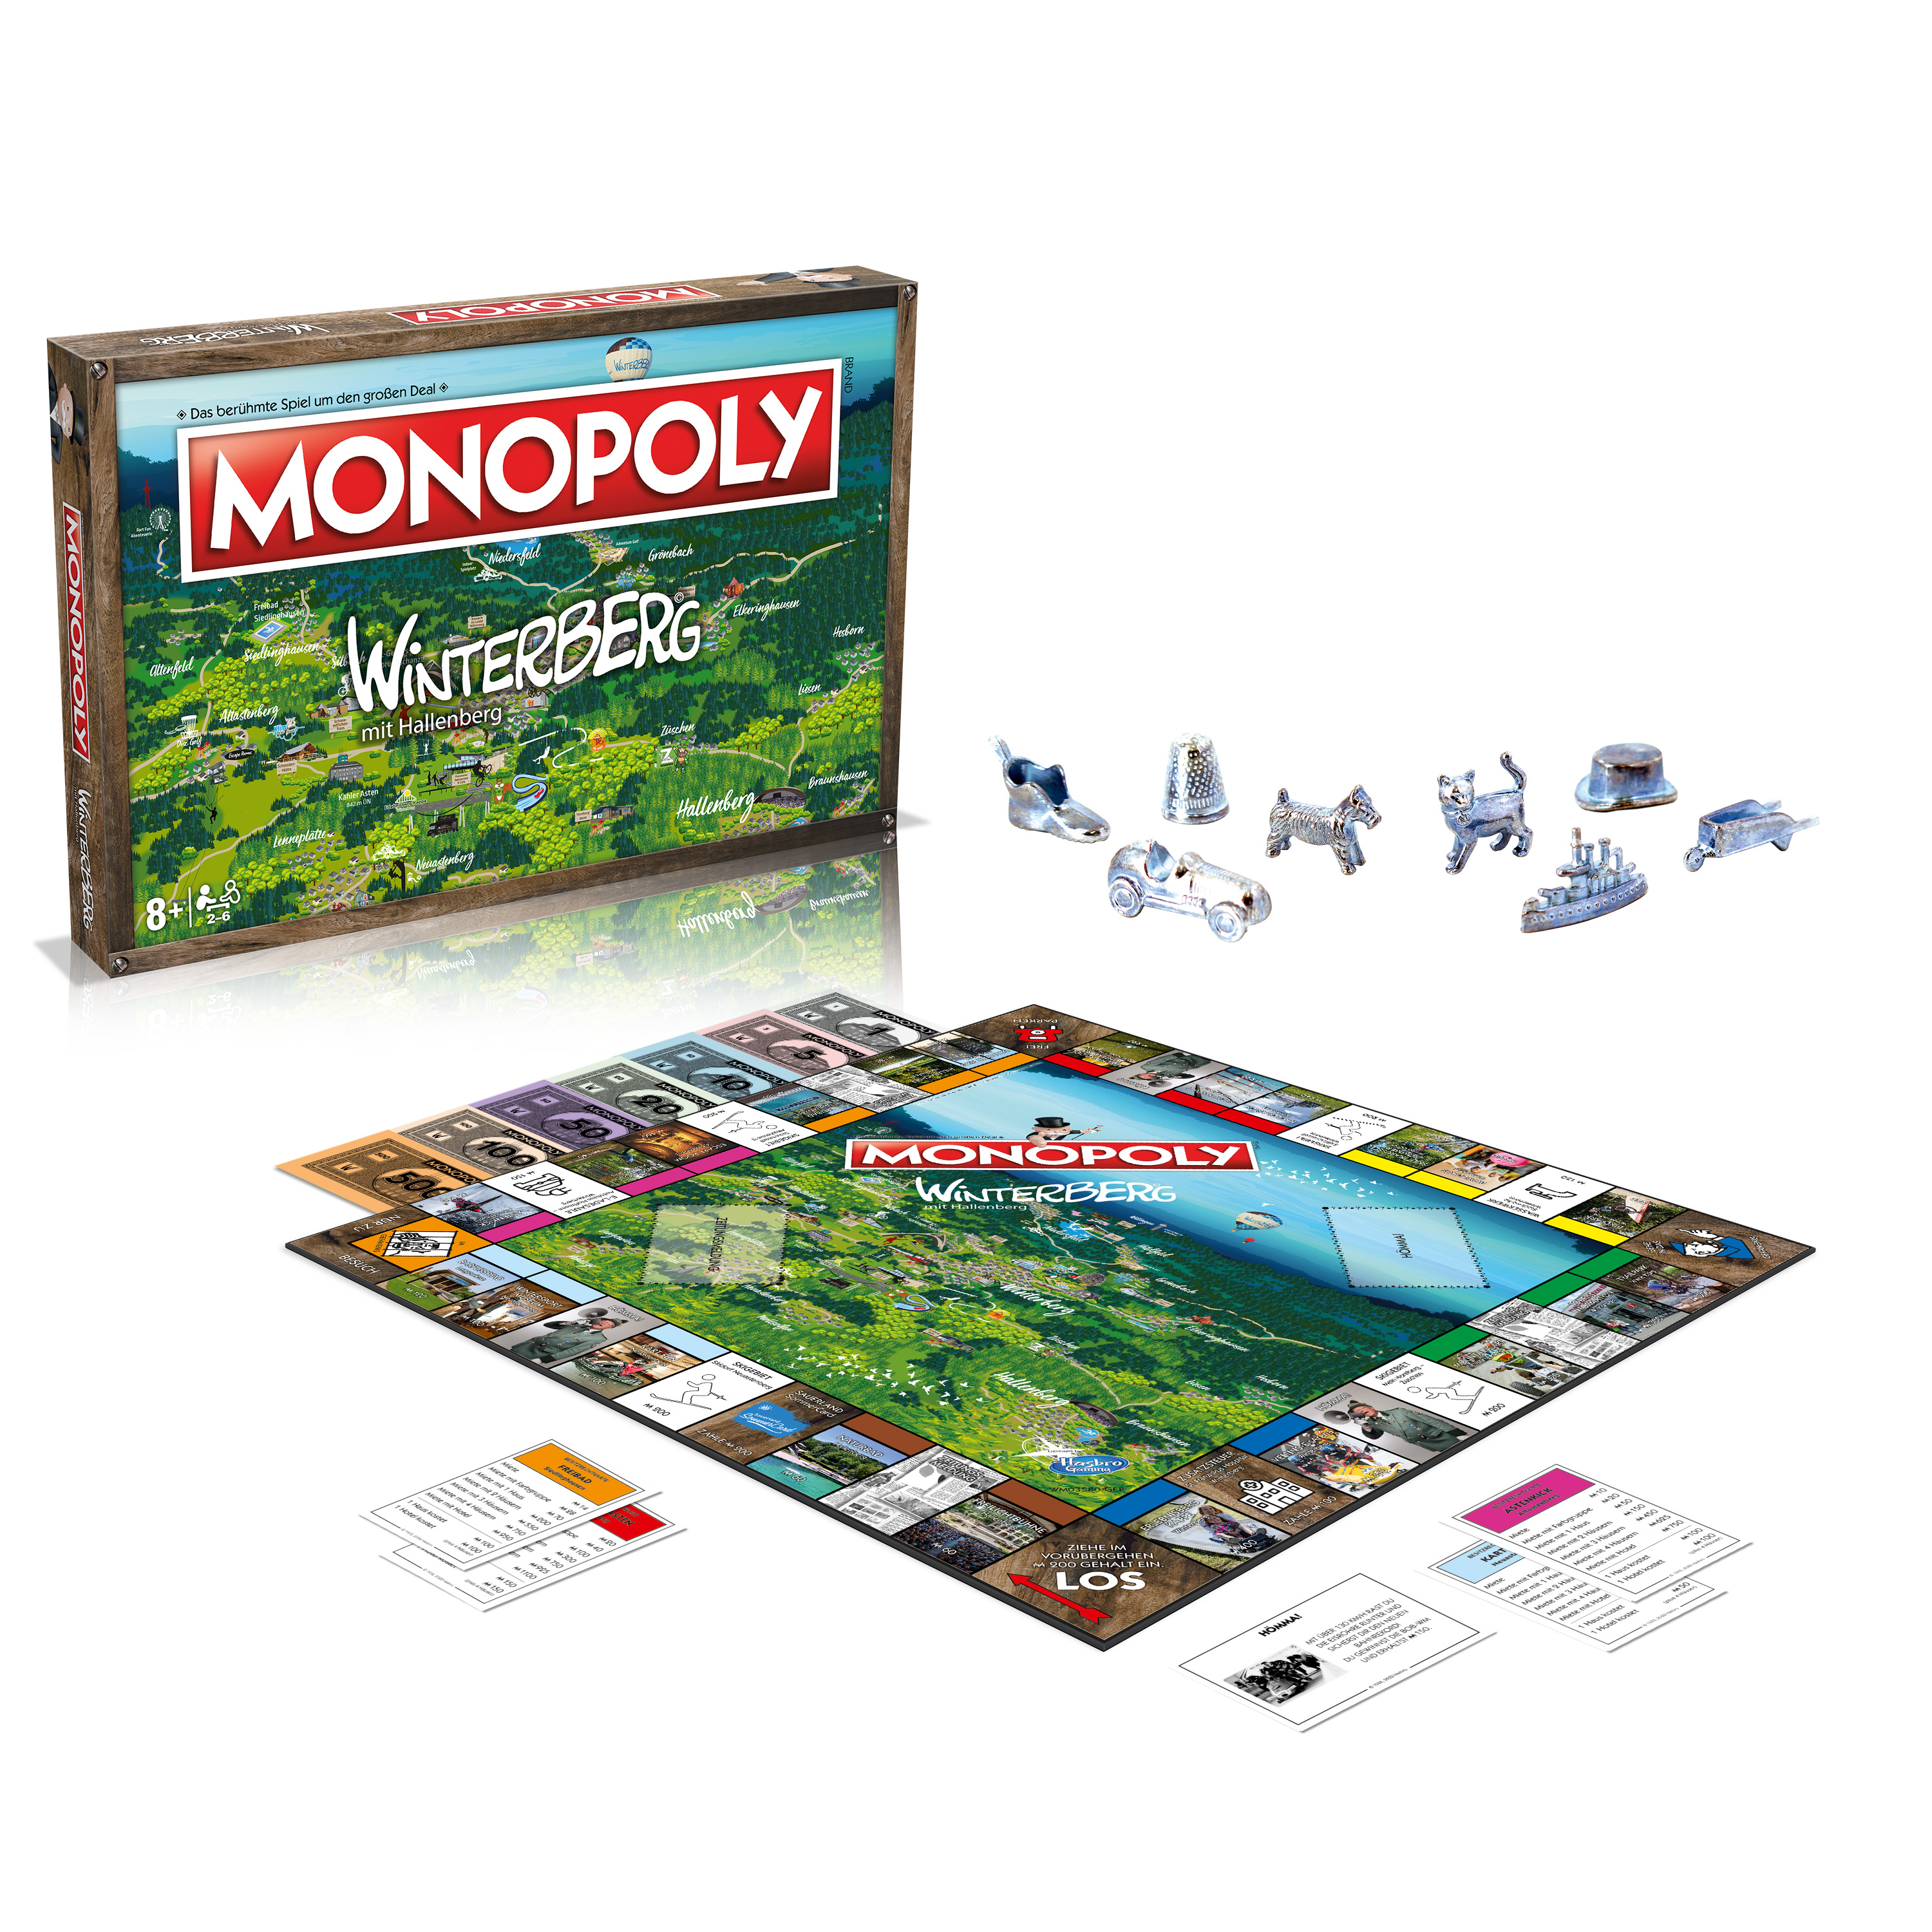 - WINNING Winterberg Monopoly Brettspiel MOVES